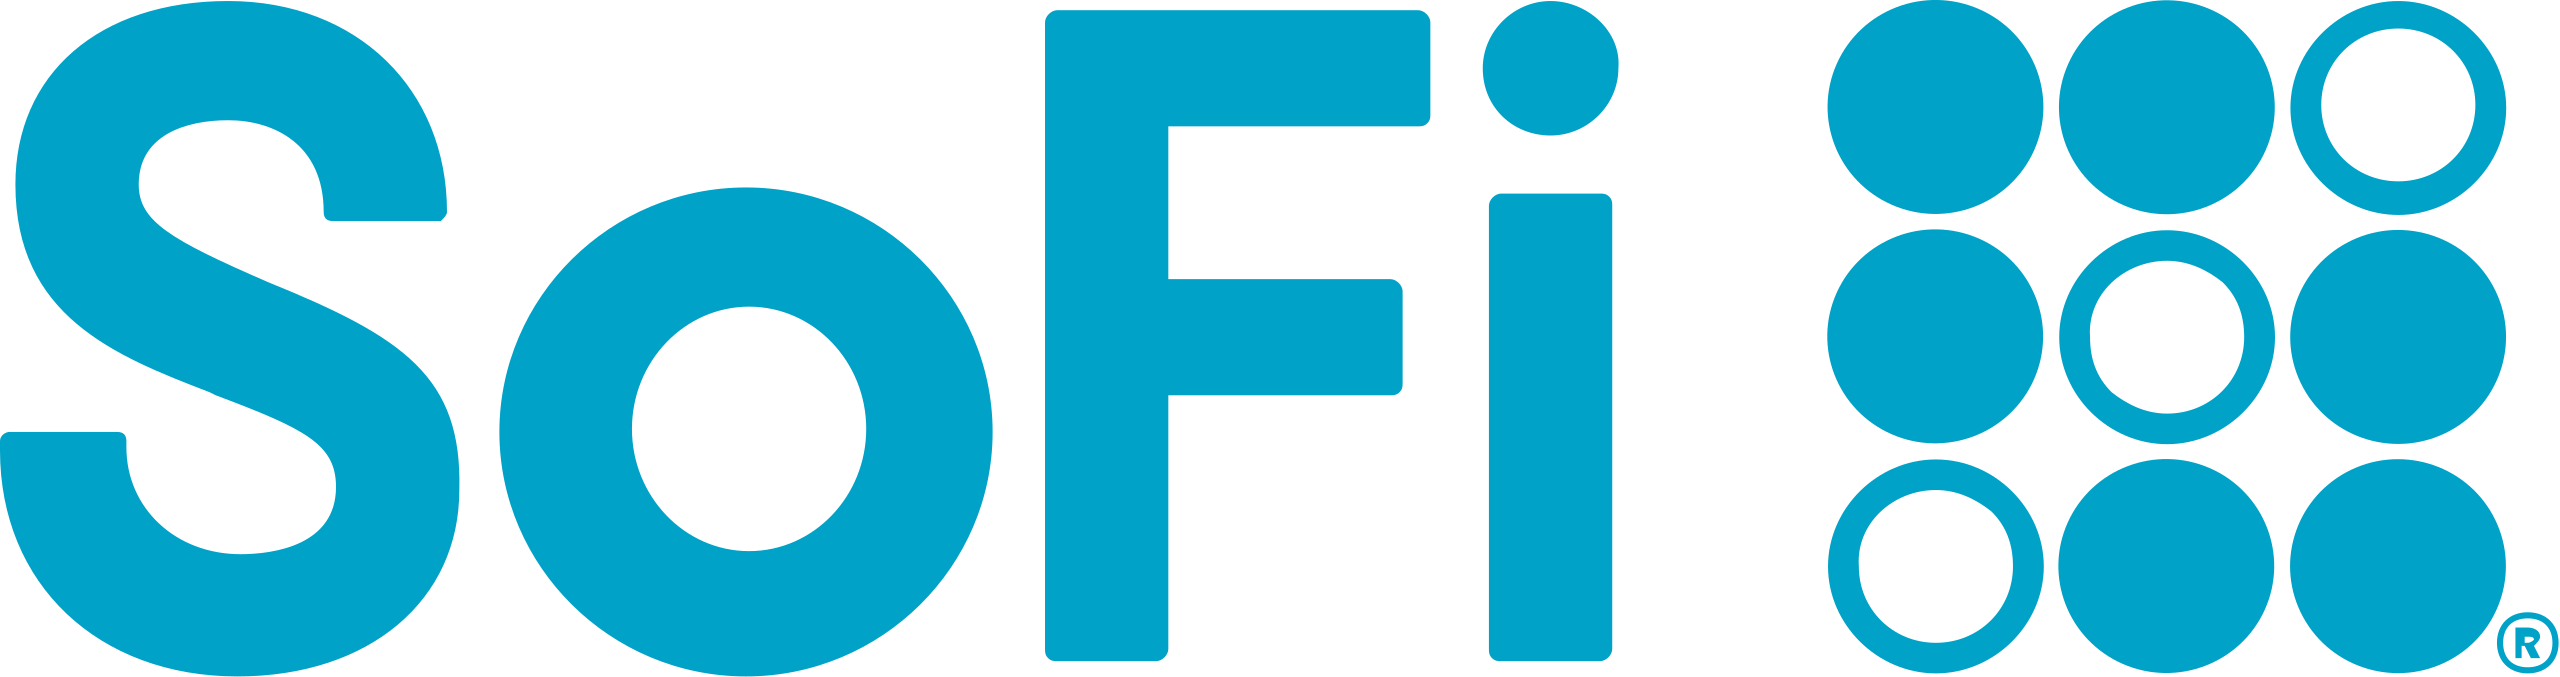 SoFi_logo.svg (1)